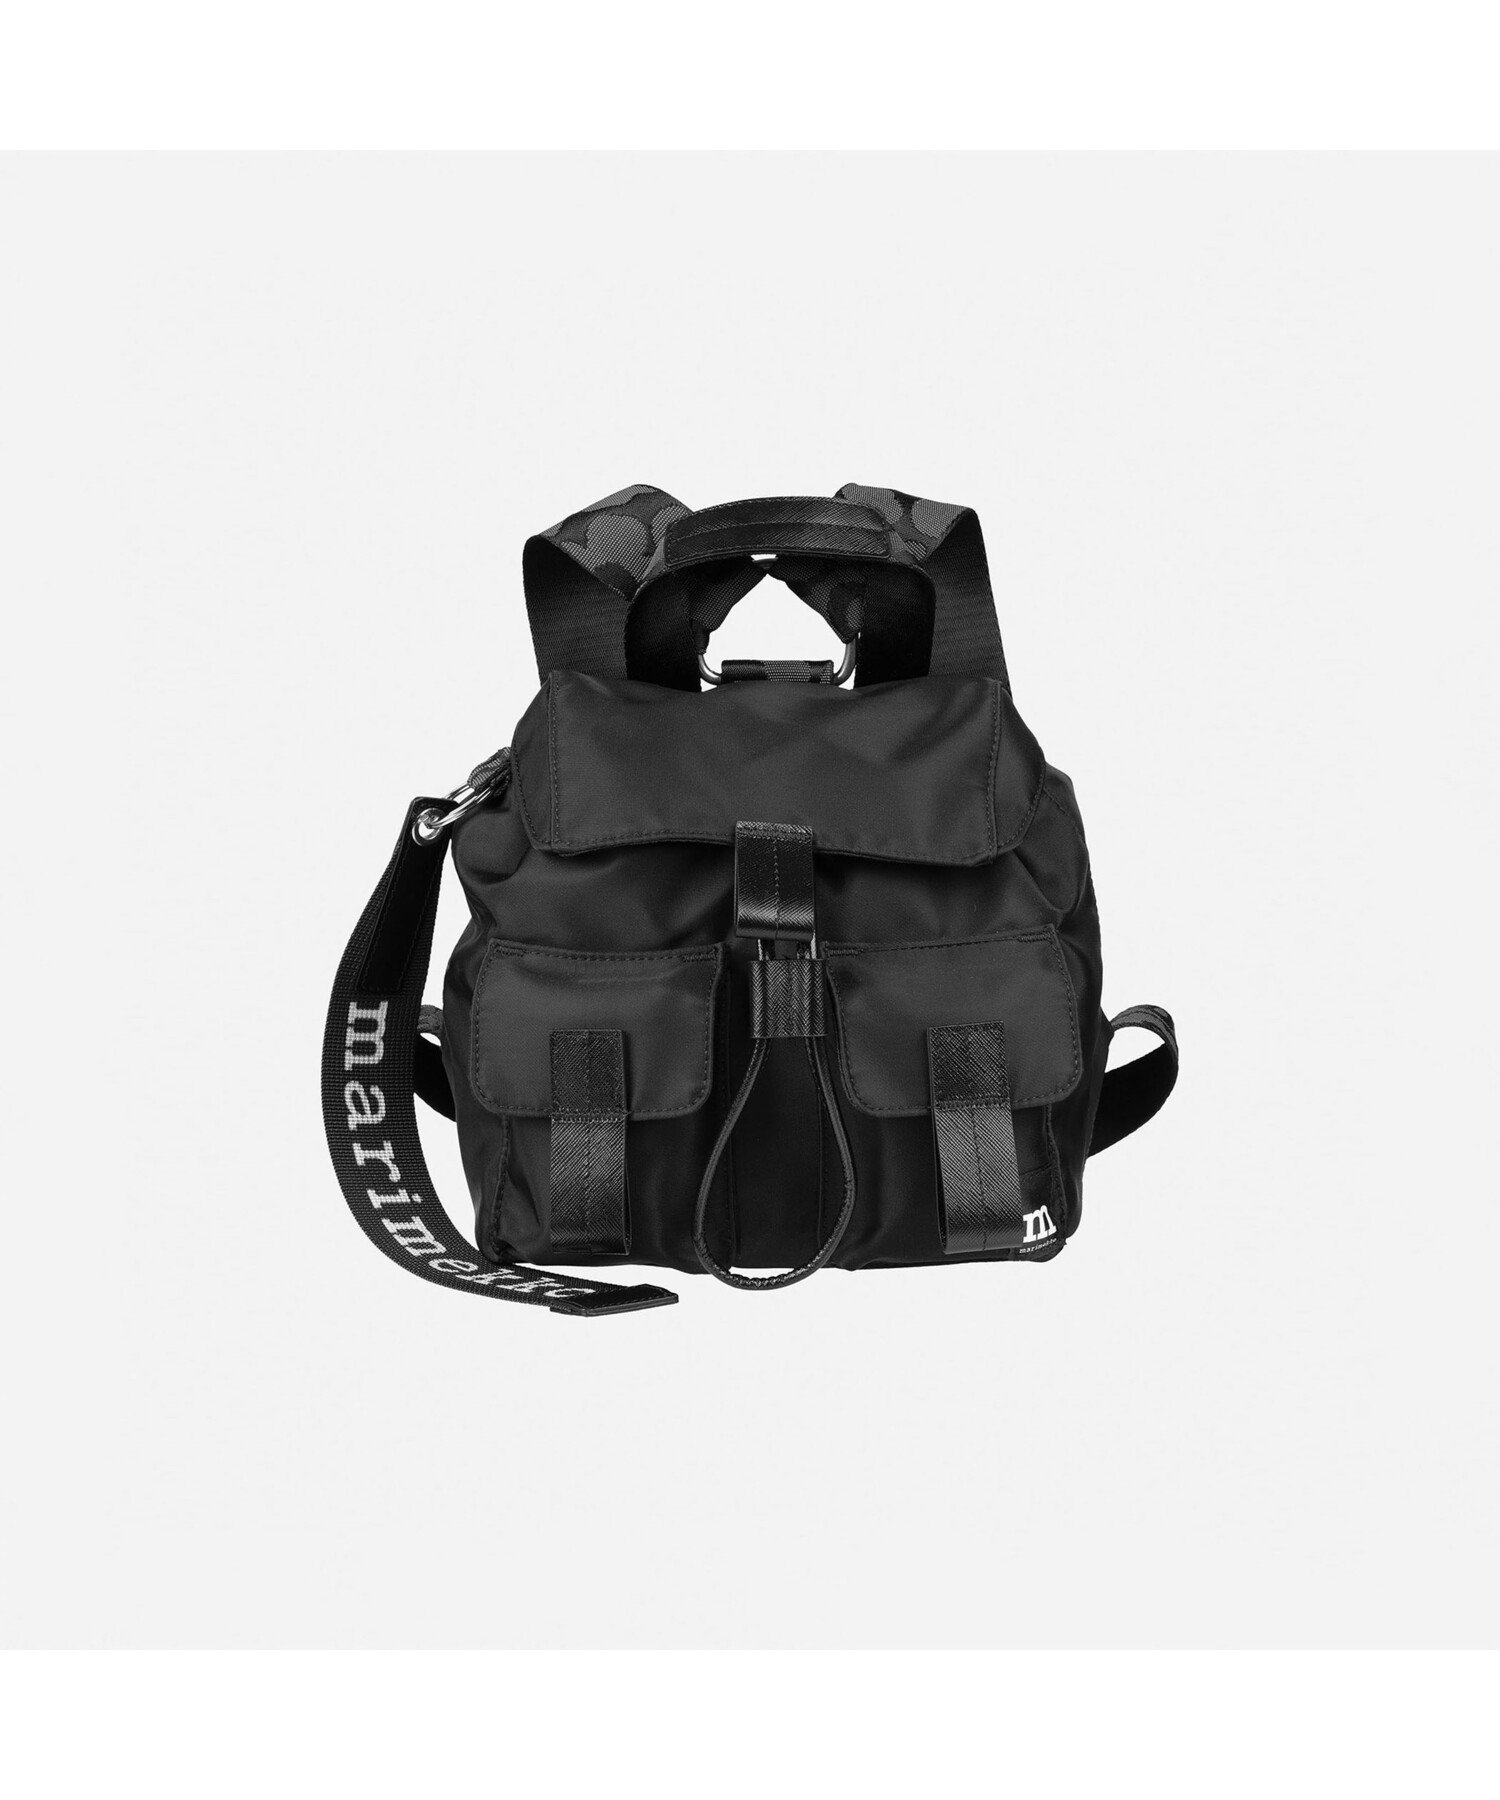 マリメッコ Marimekko Everything Backpack S Solid バックパック マリメッコ バッグ リュック・バックパック ブラック【送料無料】